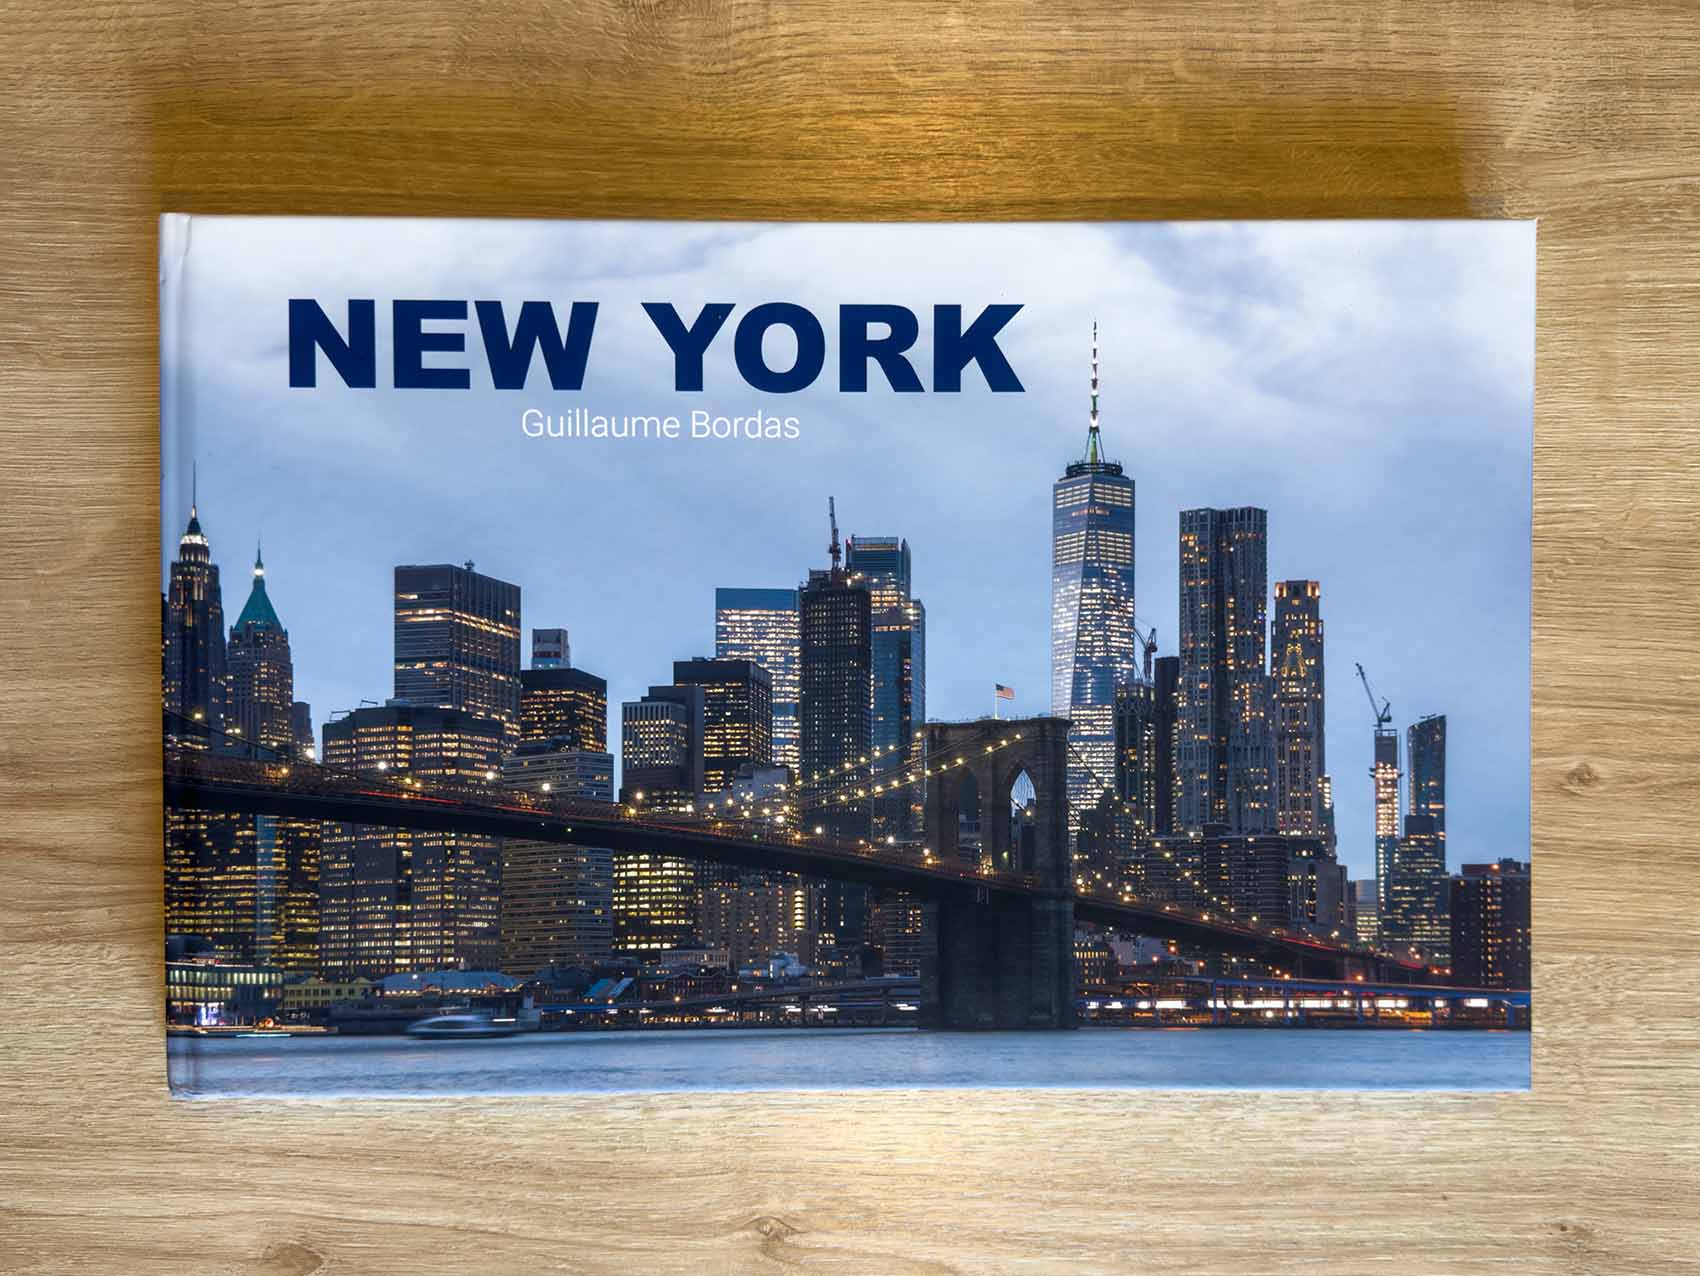 Imprimer ses photos - Livre New York, imprimé chez Saal Digital